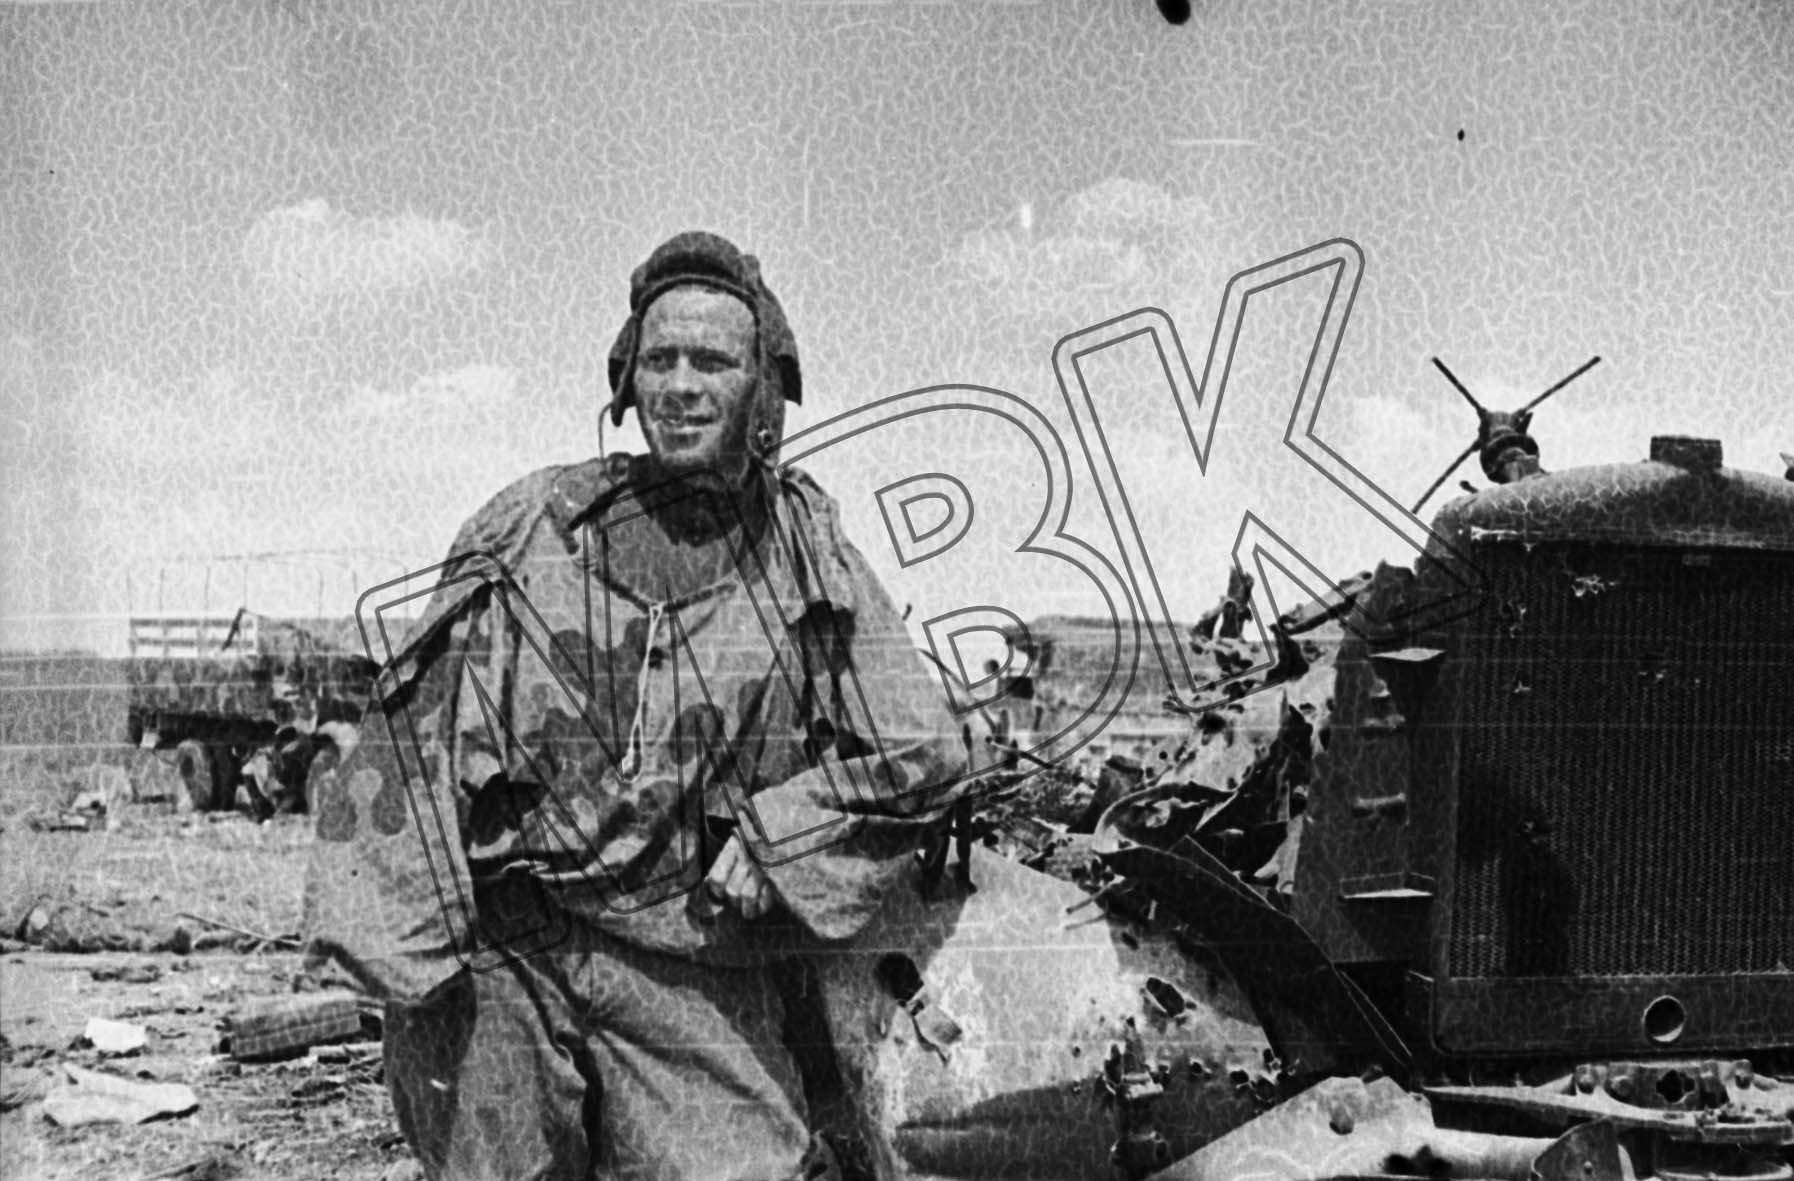 Fotografie: Sowjetischer Panzerkommandeur, 3. Belorussische Front, Ende Juli 1944 (Museum Berlin-Karlshorst RR-P)